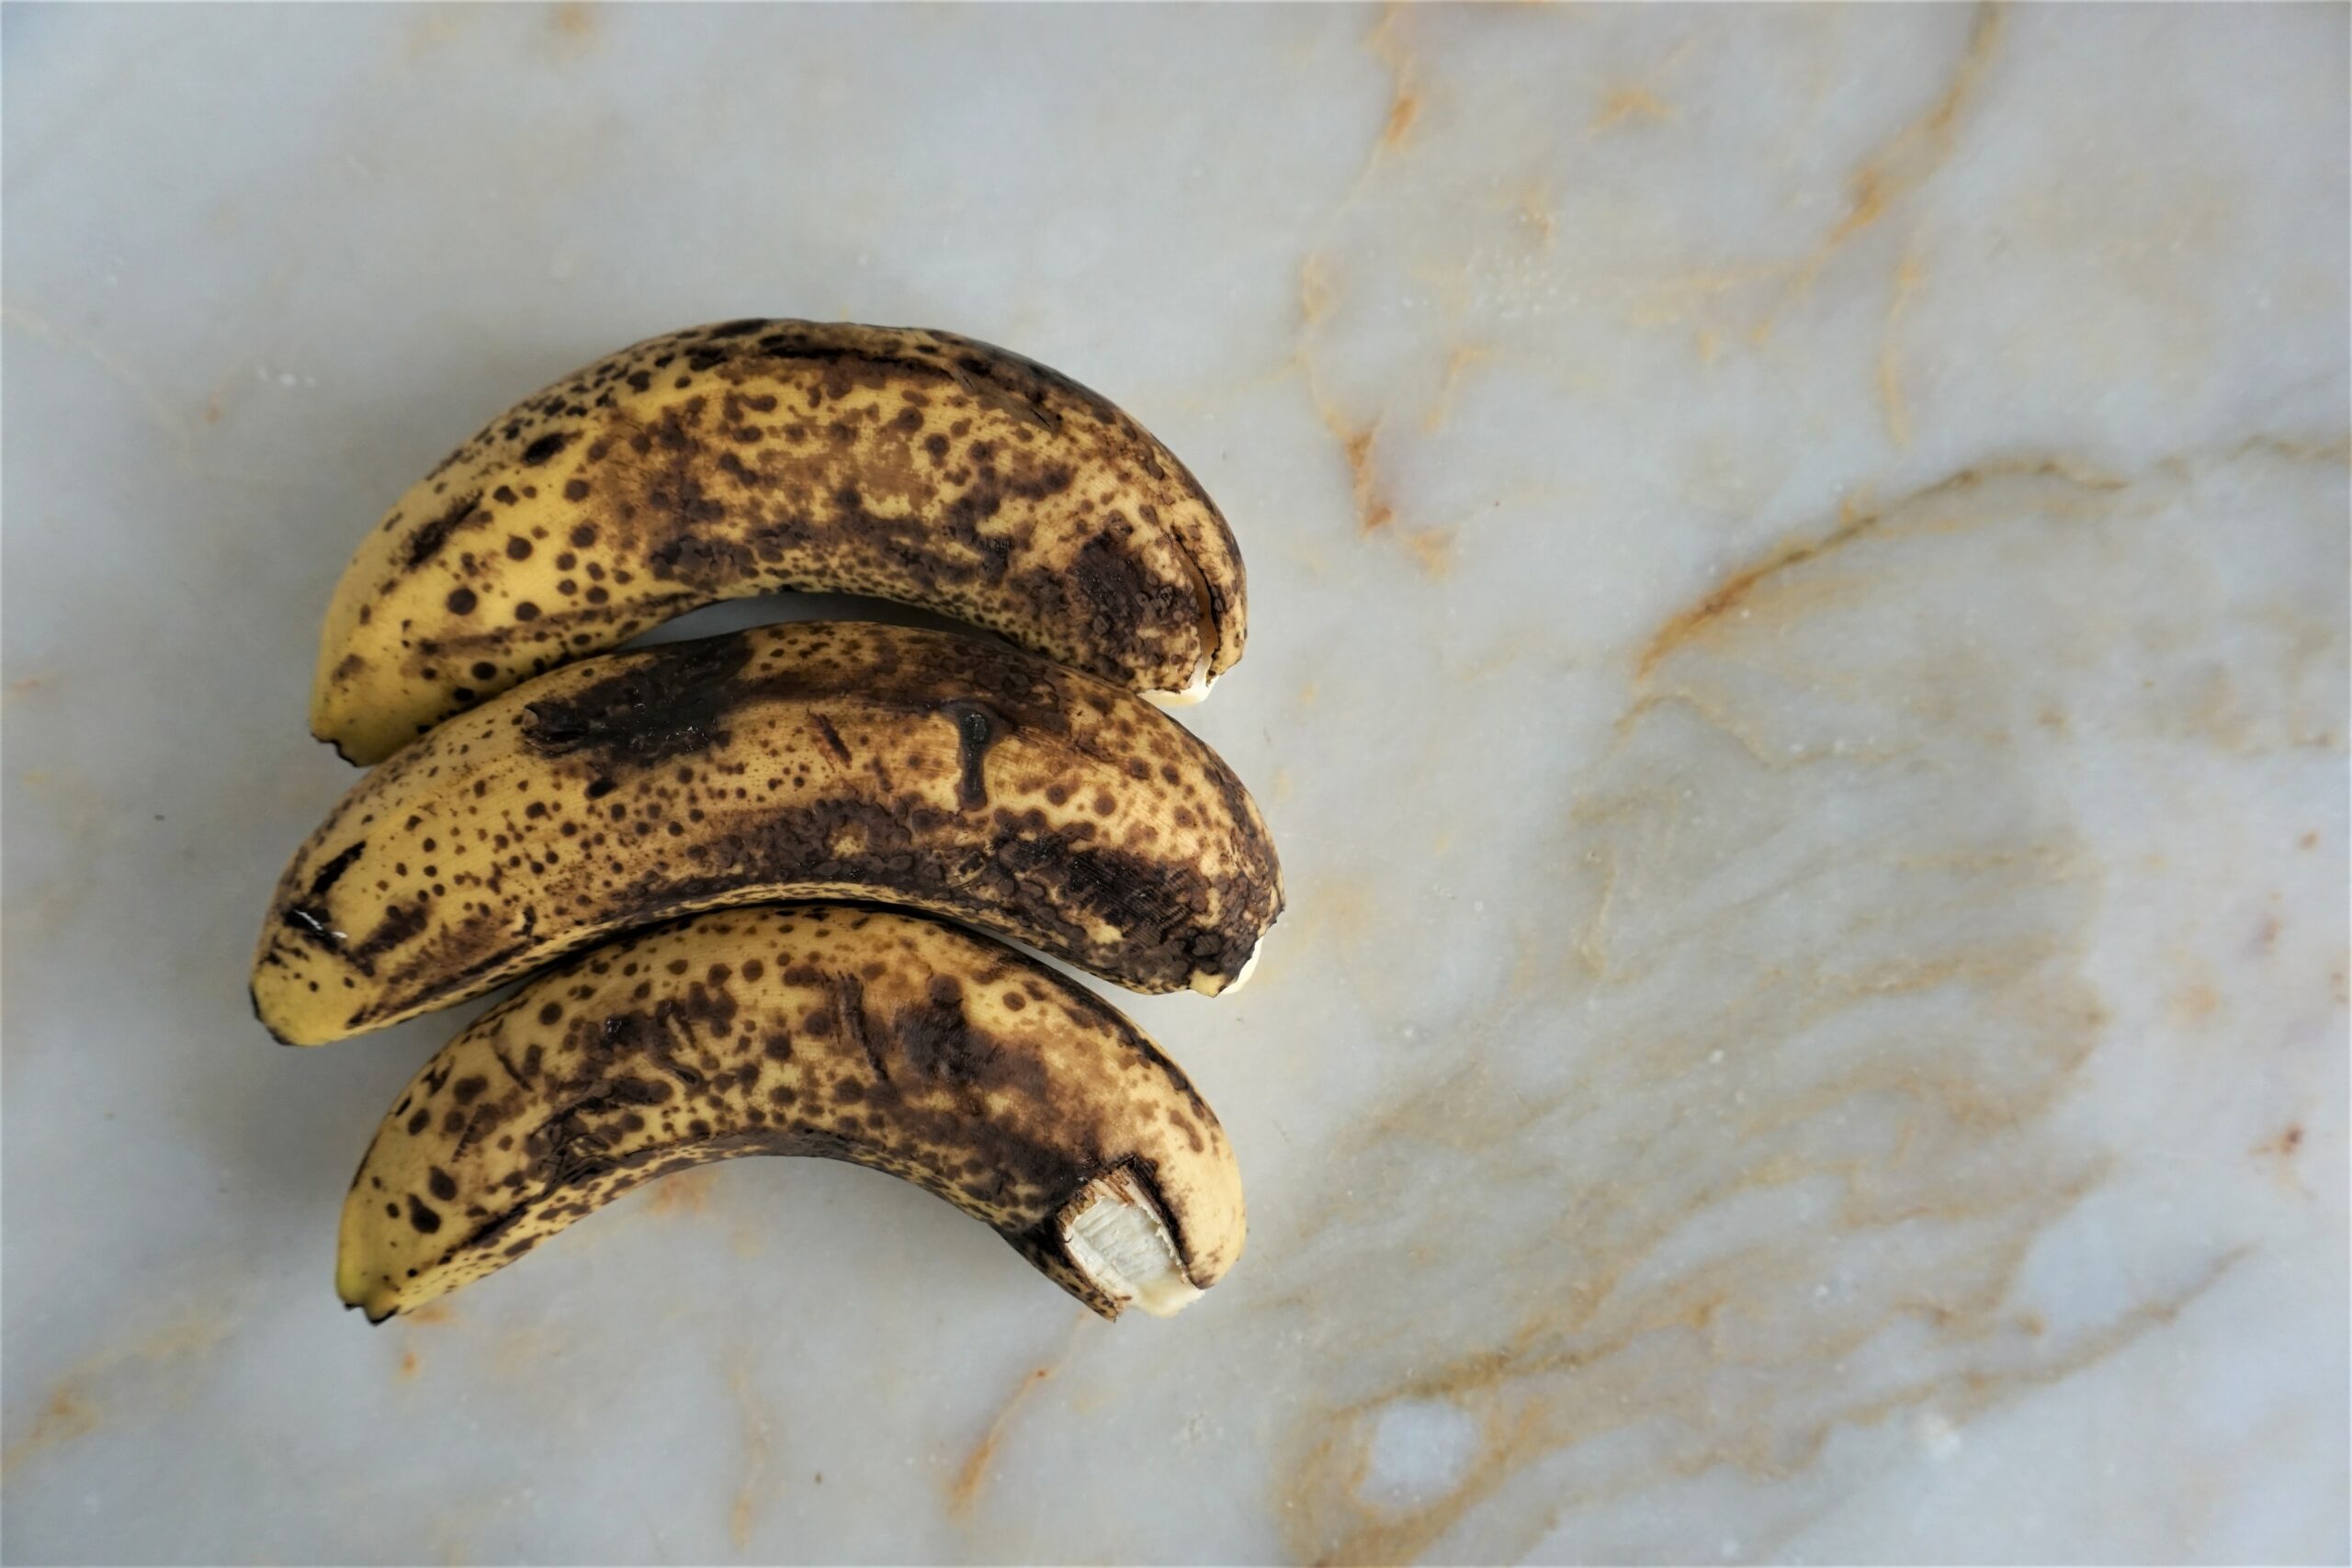 Attenzione alle banane annerite: cosa c'è da sapere in merito